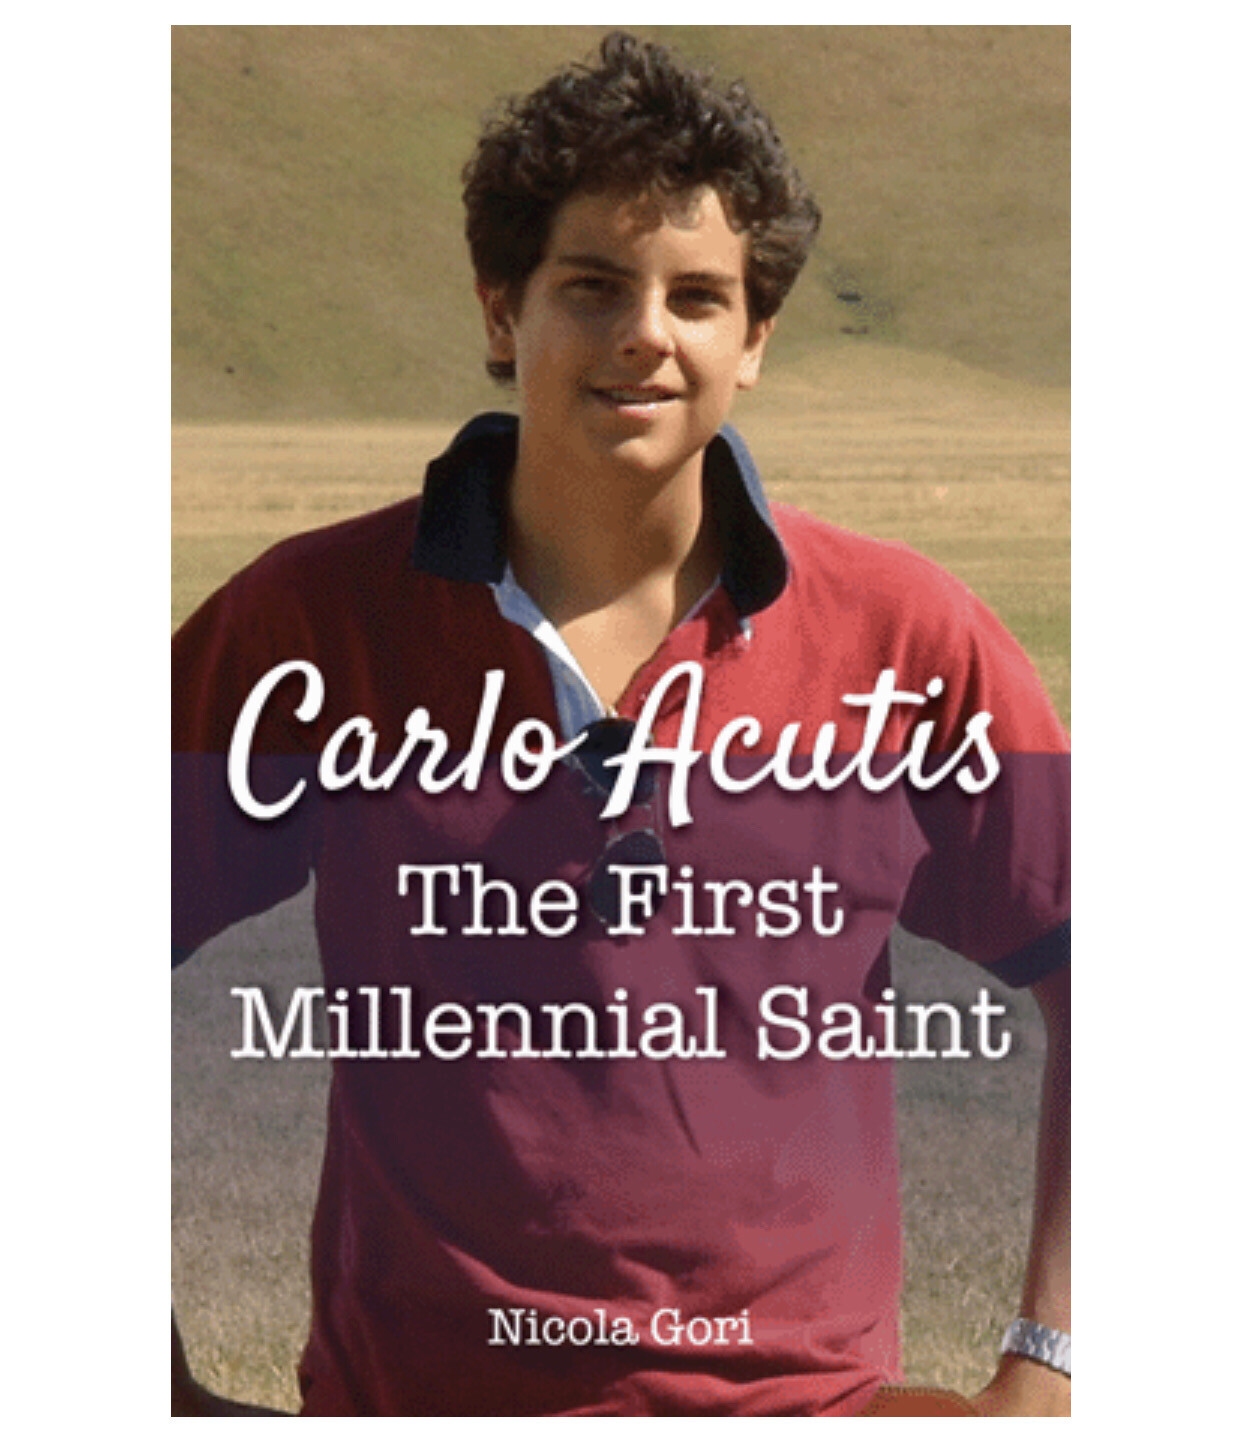 Carlo Acutis: The First Millennial Saint